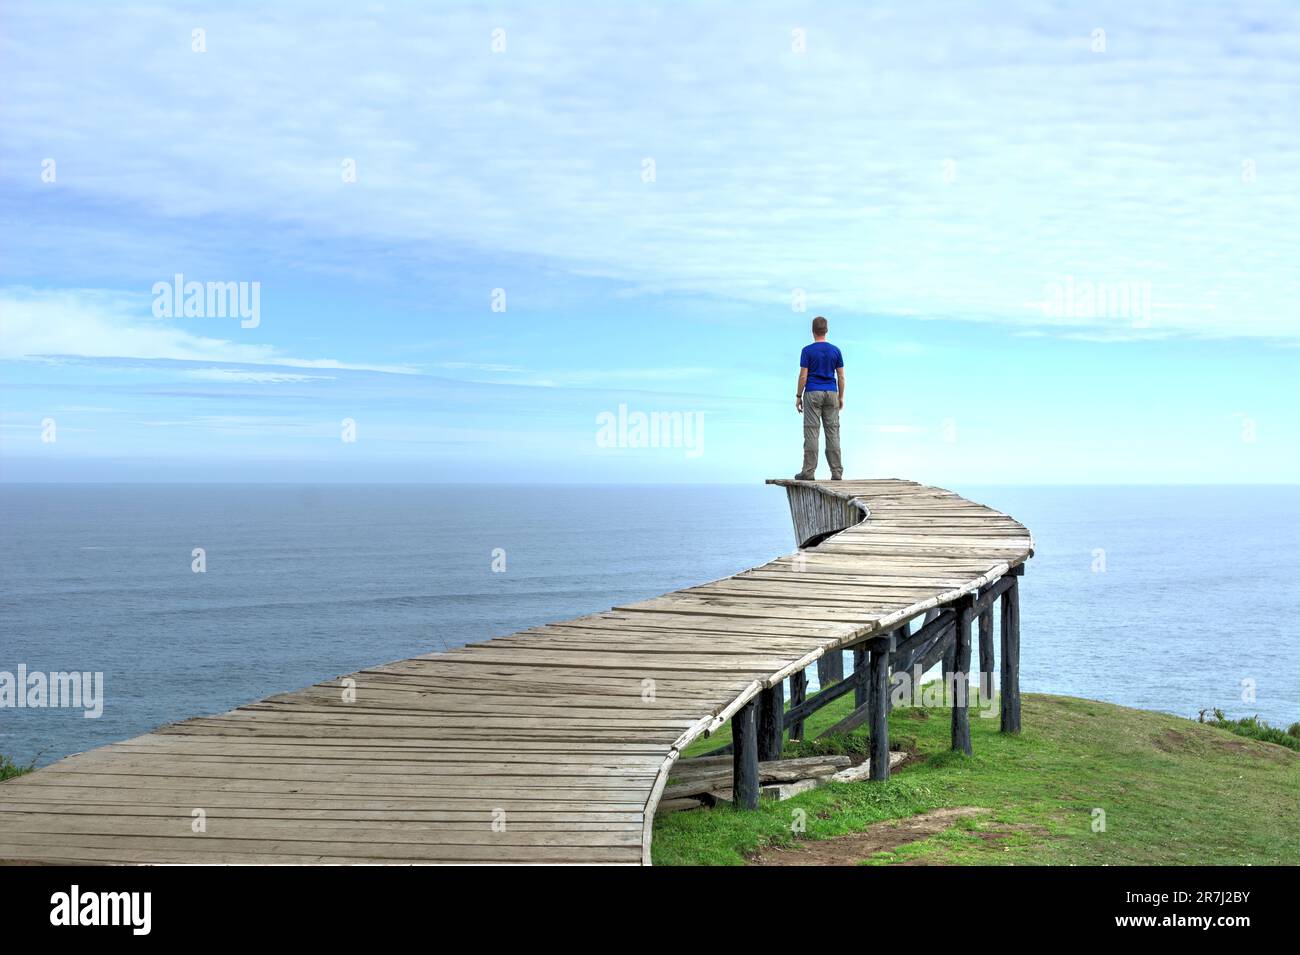 Un homme se tient sur le bord d'une longue passerelle en bois (le « Dock of Souls » de Chiloé) et regarde l'océan jusqu'à l'horizon par temps clair Banque D'Images